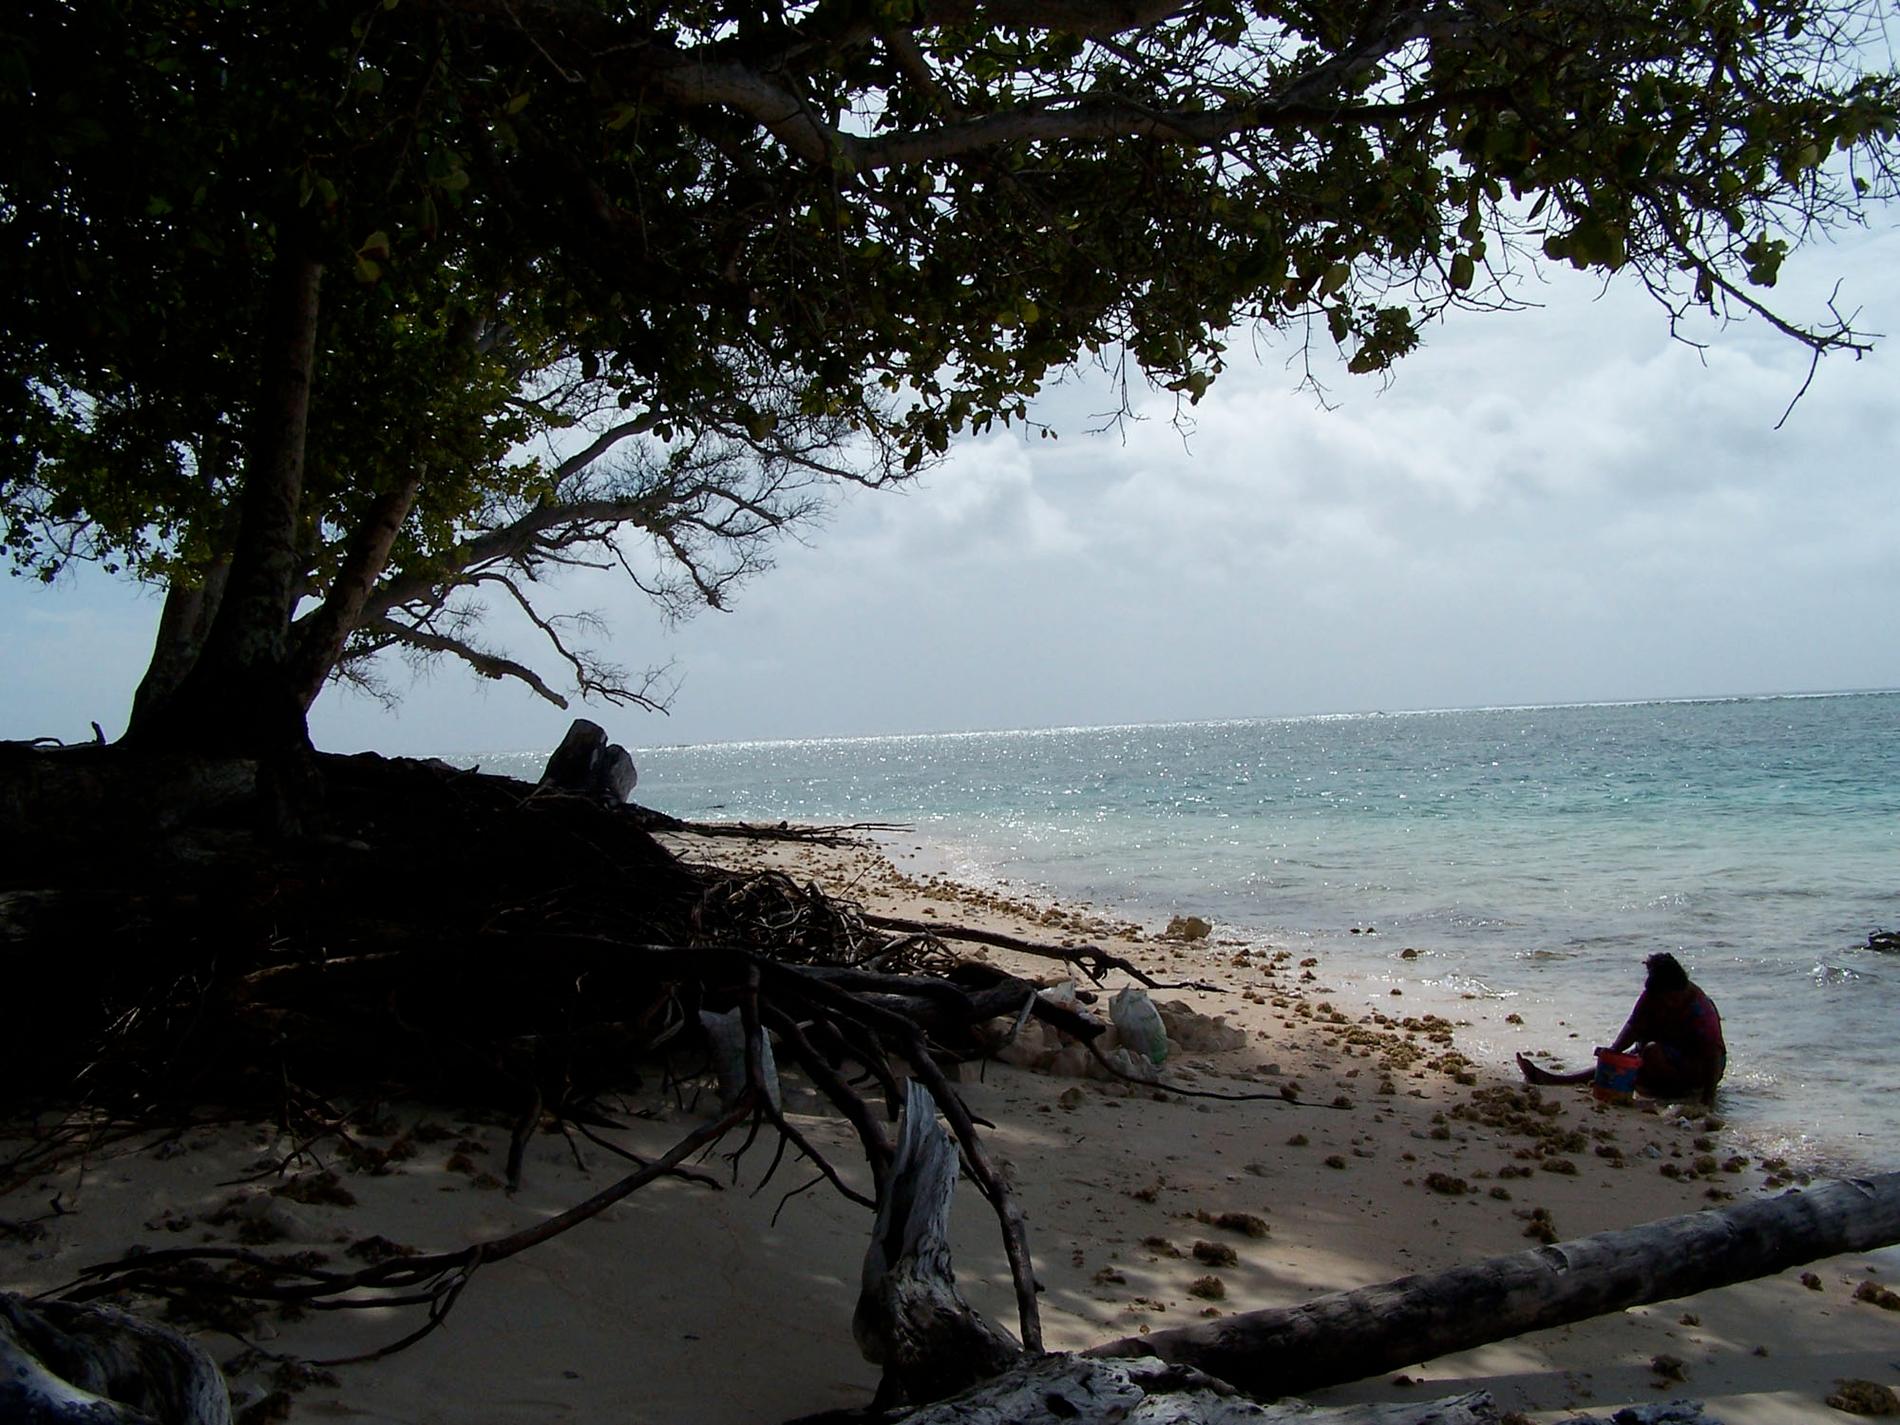 Klimatfonden ska hjälpa till att motverka klimatförändringar. Arkivbild från Marshallöarna, en av de platser som är mest utsatta.